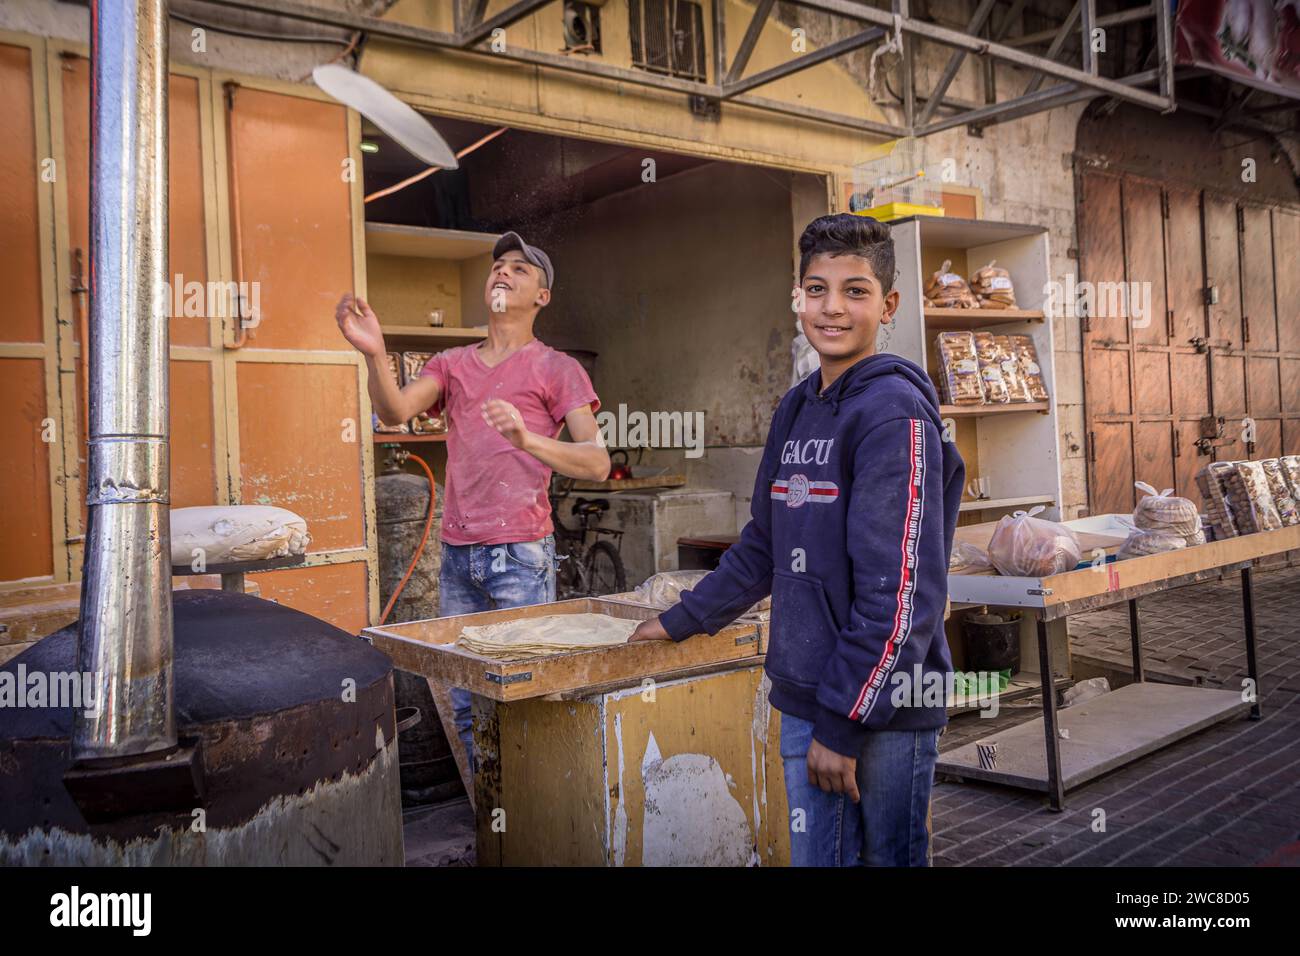 Los niños palestinos están haciendo pan en la panadería local en el centro de Hebrón, Cisjordania, Palestina. Foto de stock